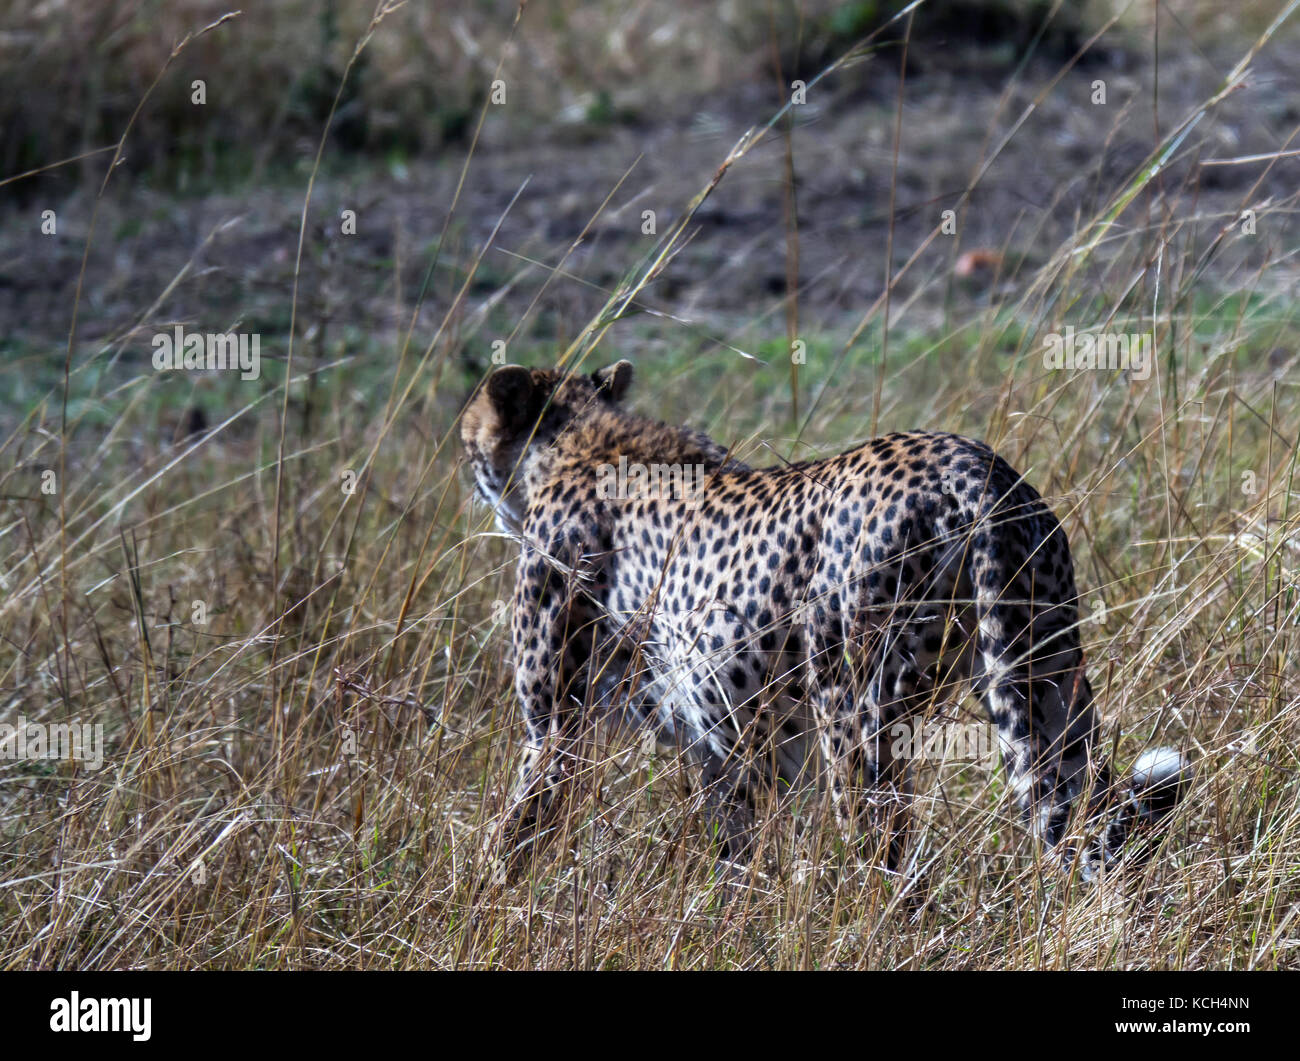 Der Gepard ist das schnellste Land Säugetier. Dieses cheetah offensichtlich schwanger ist, und war auf der Suche nach einem ruhigen, schattigen Platz für einen Vormittag Siesta. Stockfoto